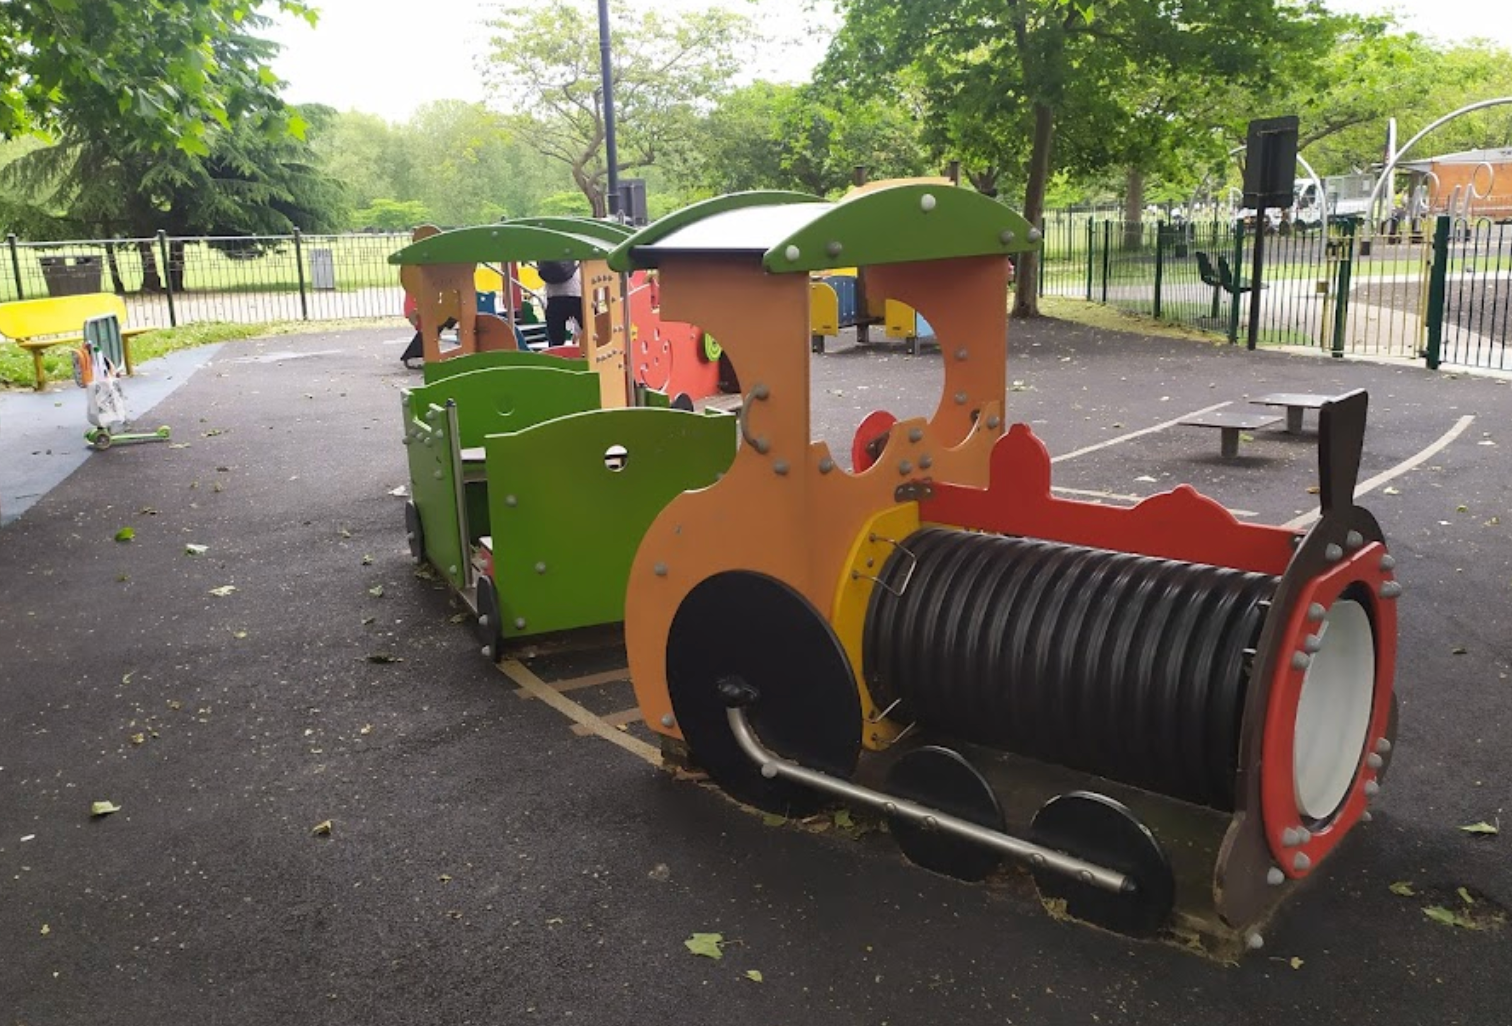 Battersea Park Children’s Playground